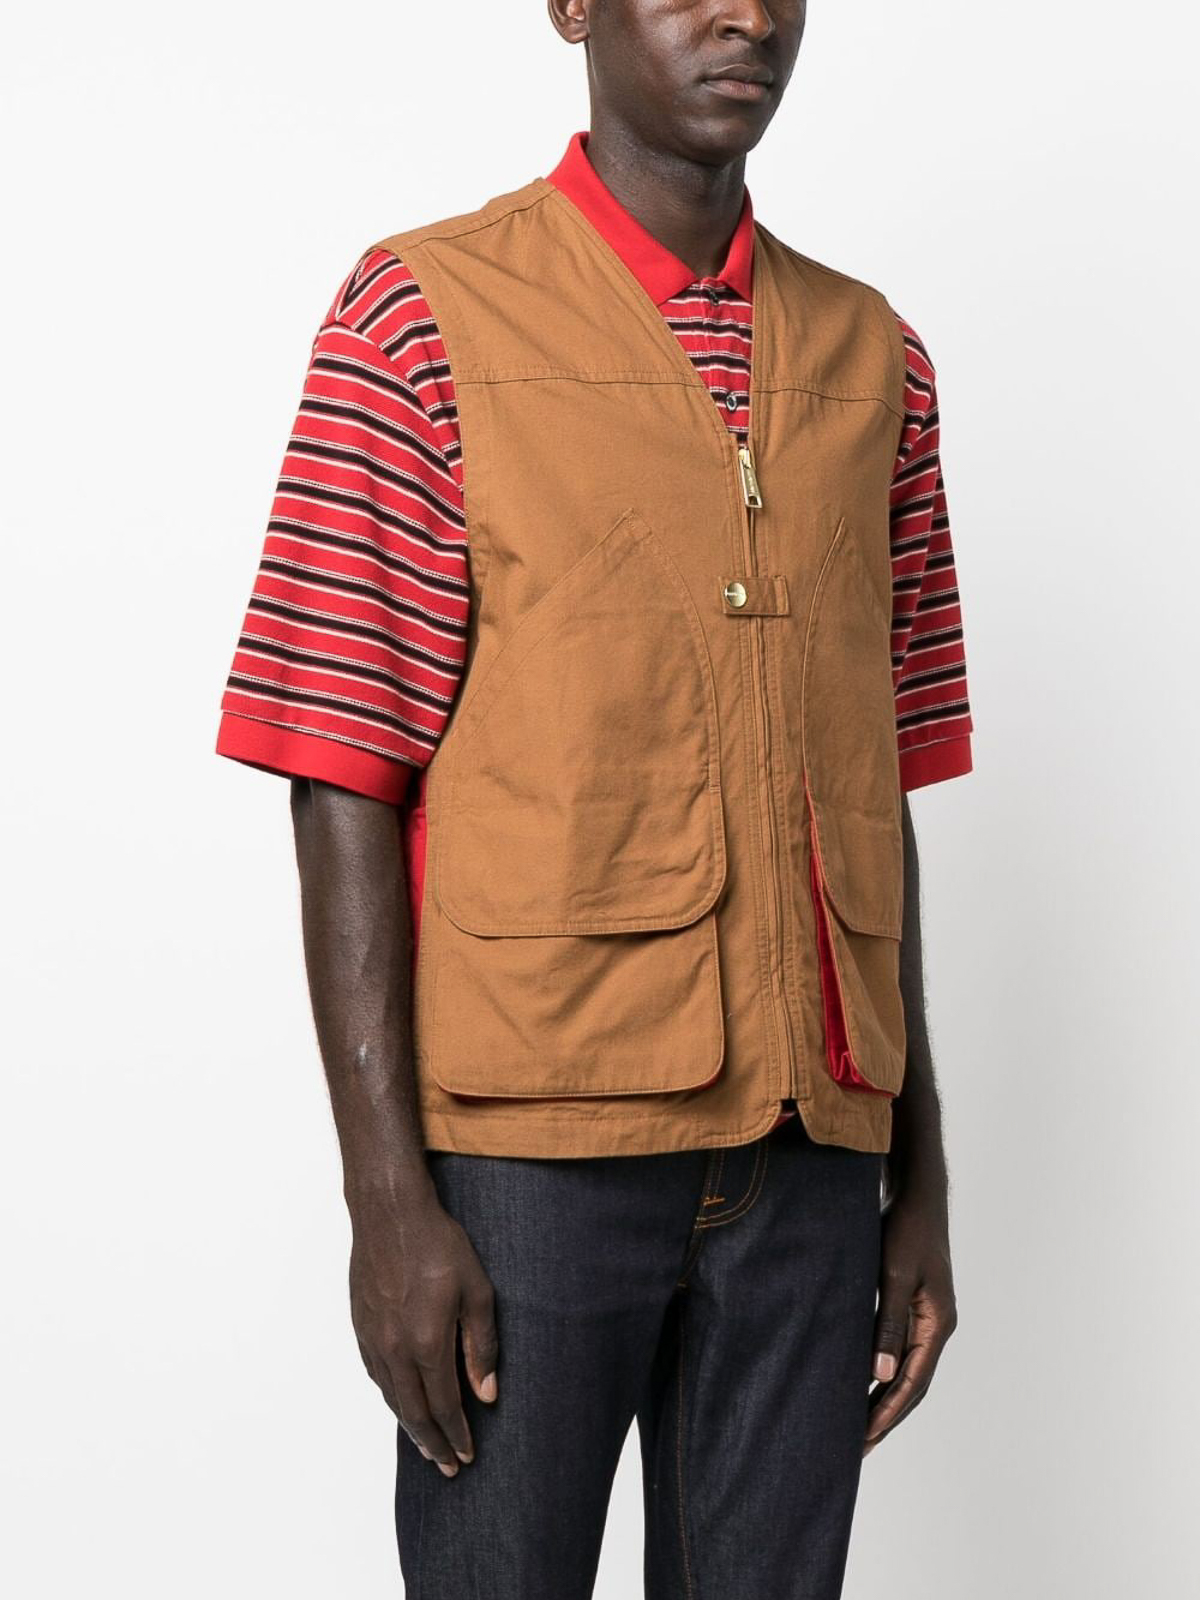 Shop Carhartt Heston Cotton Vest In Brown